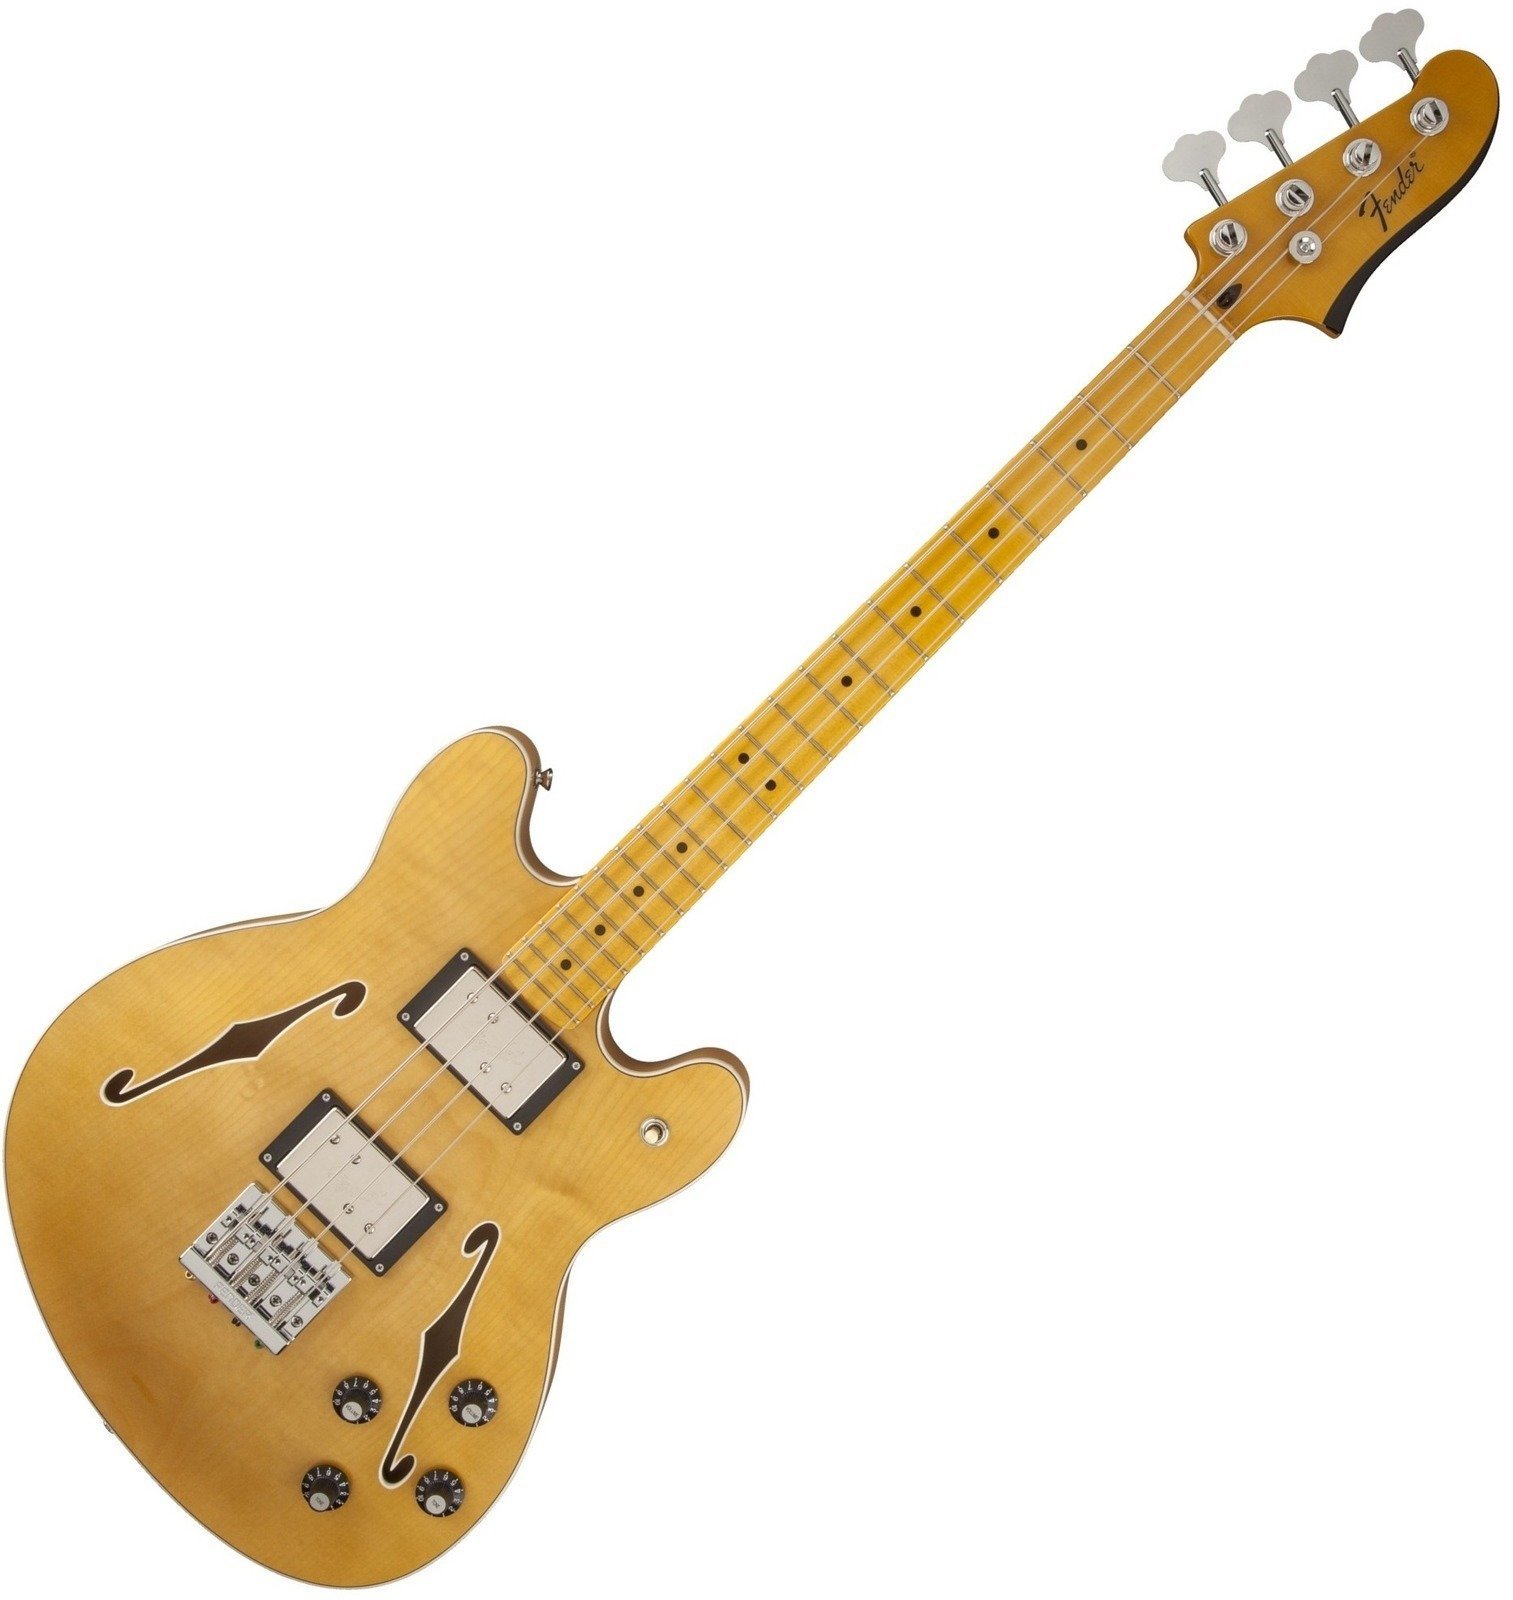 Halbresonanz Bass Fender Starcaster Bass Natural